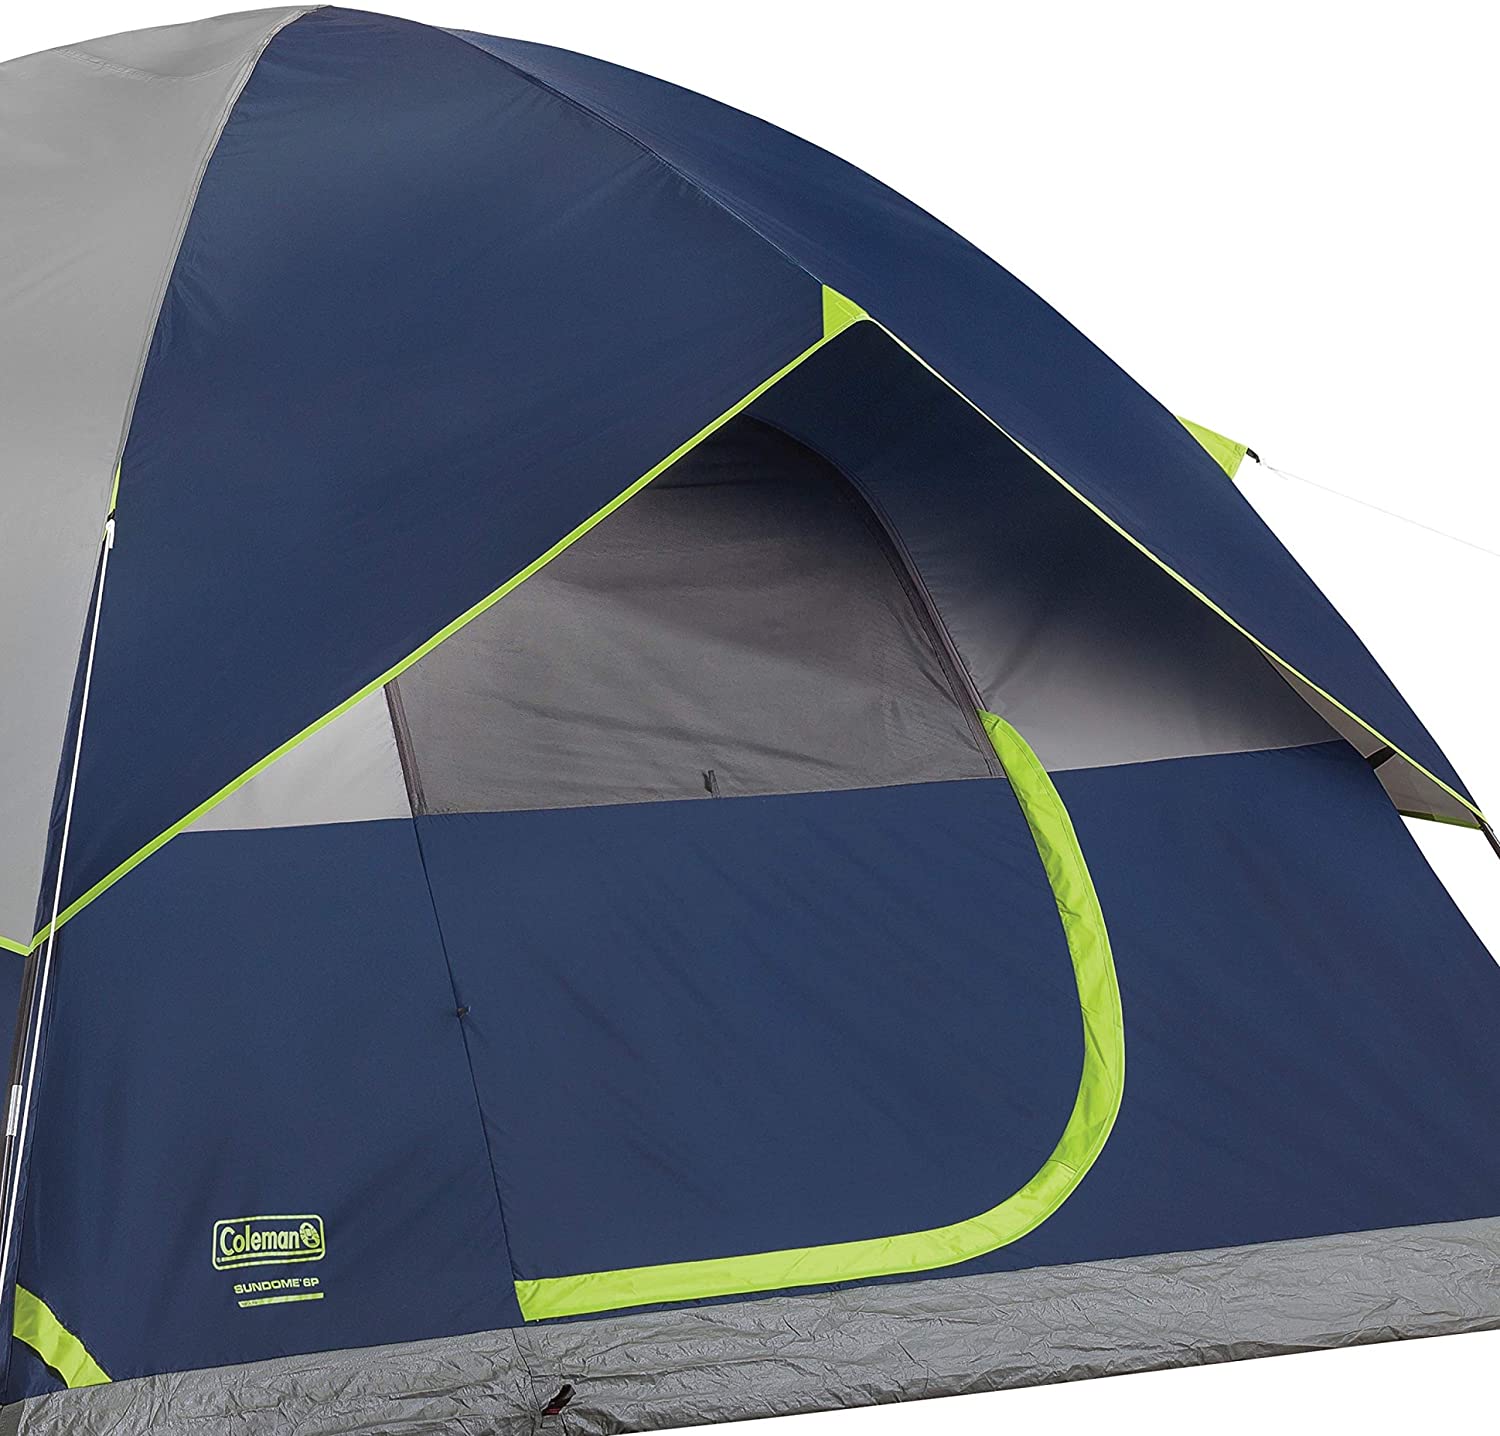 Coleman | Sundome 3 Tent, Tents, Coleman, Defiance Outdoor Gear Co.